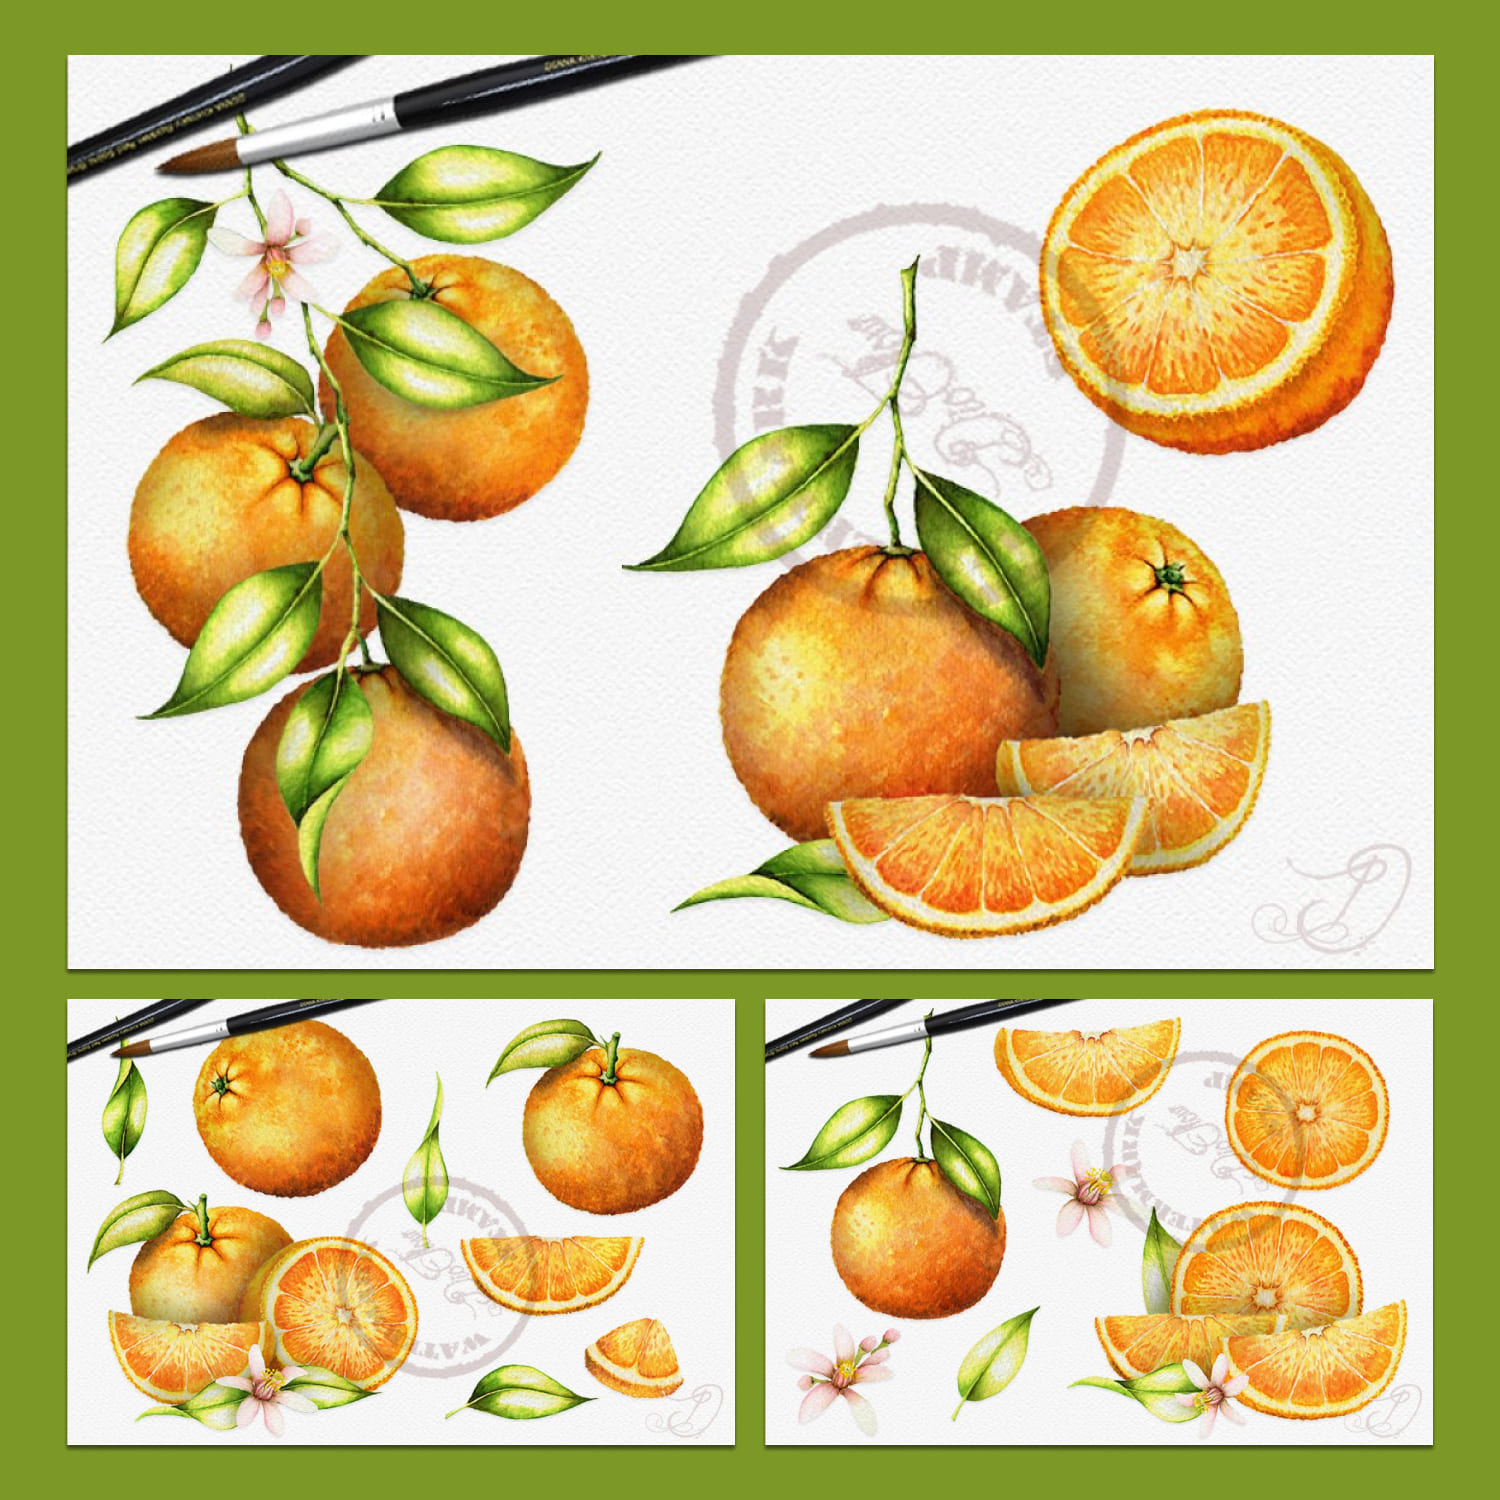 Watercolor Orange Illustration cover.